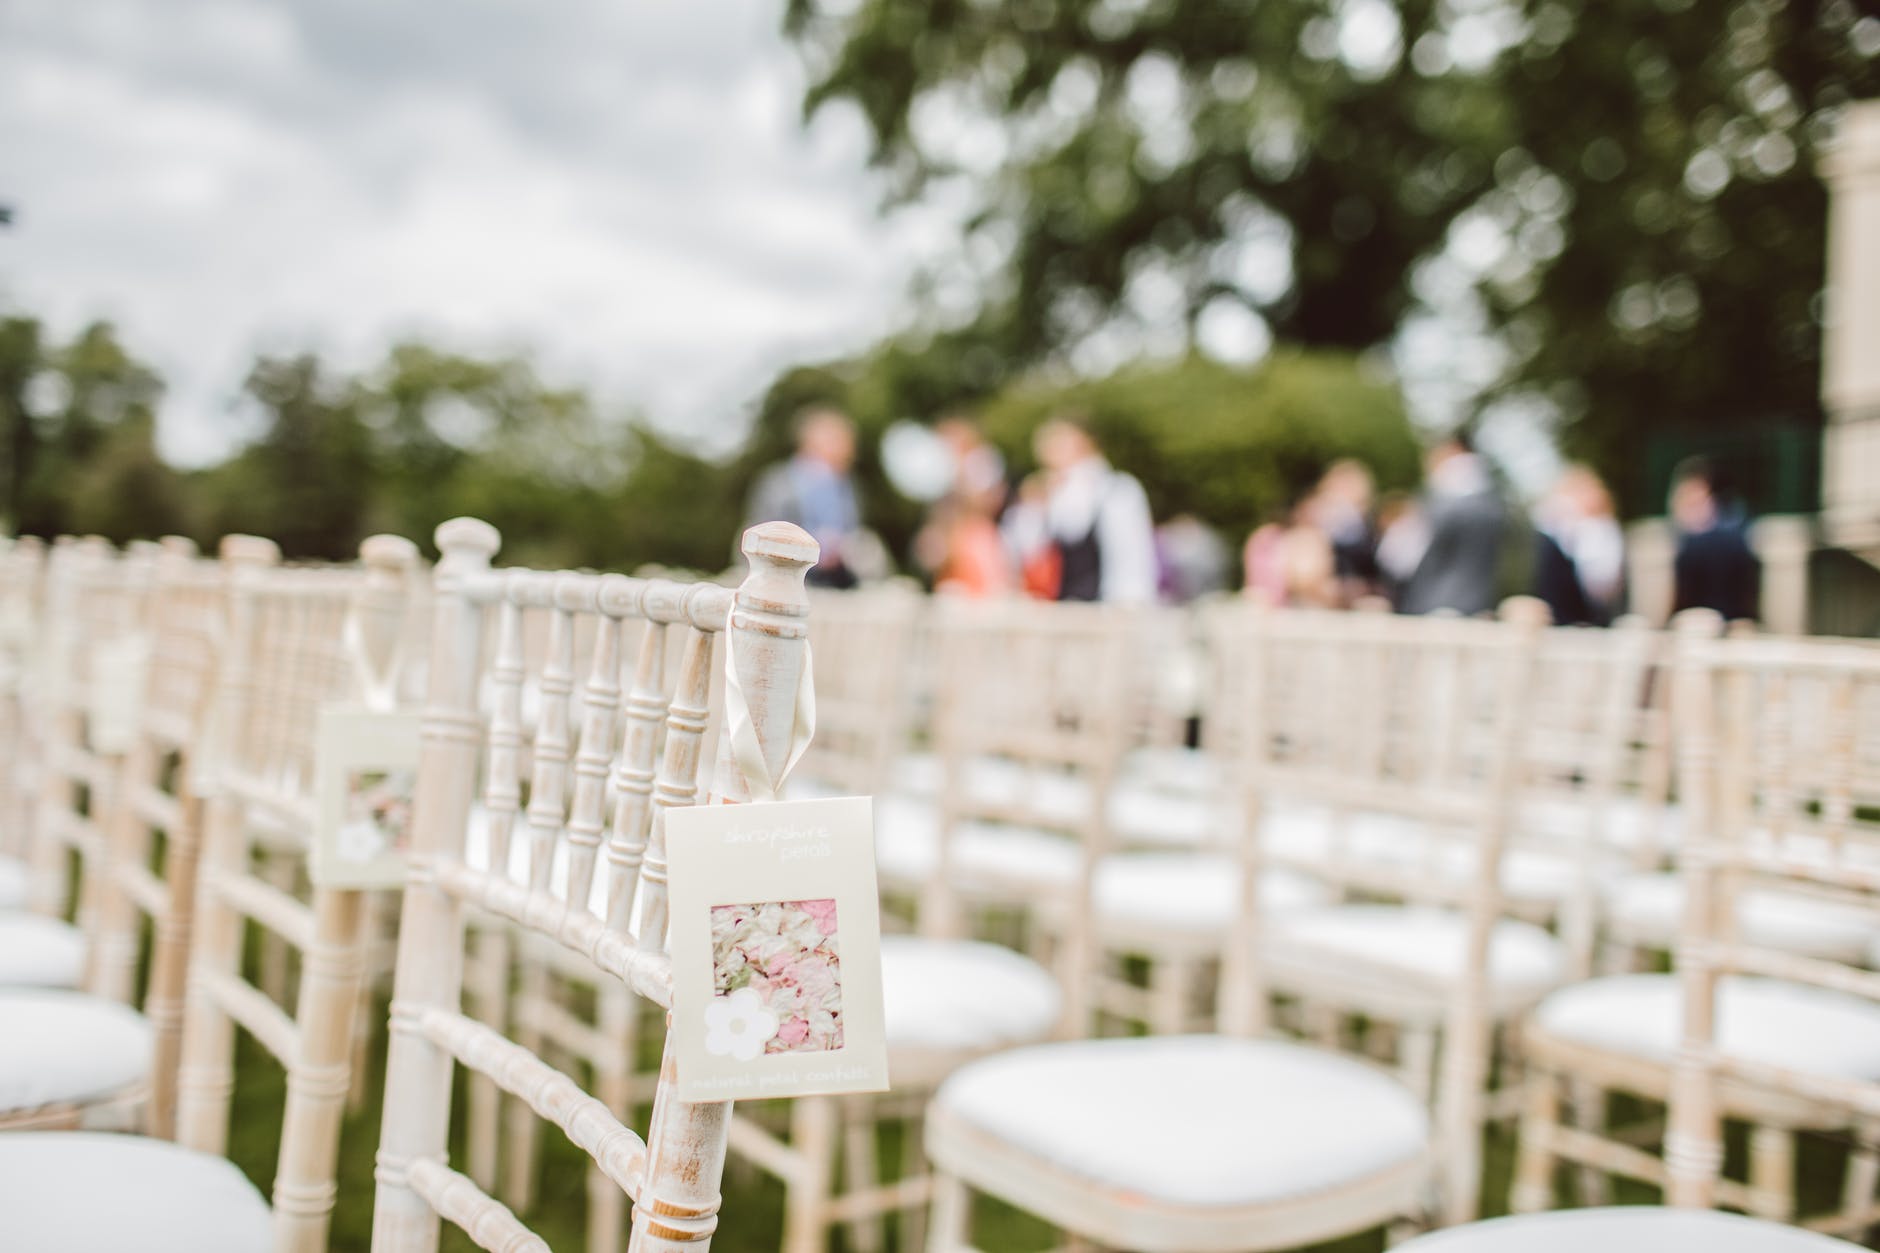 Varias sillas vacías en una ceremonia nupcial. | Foto: Pexels